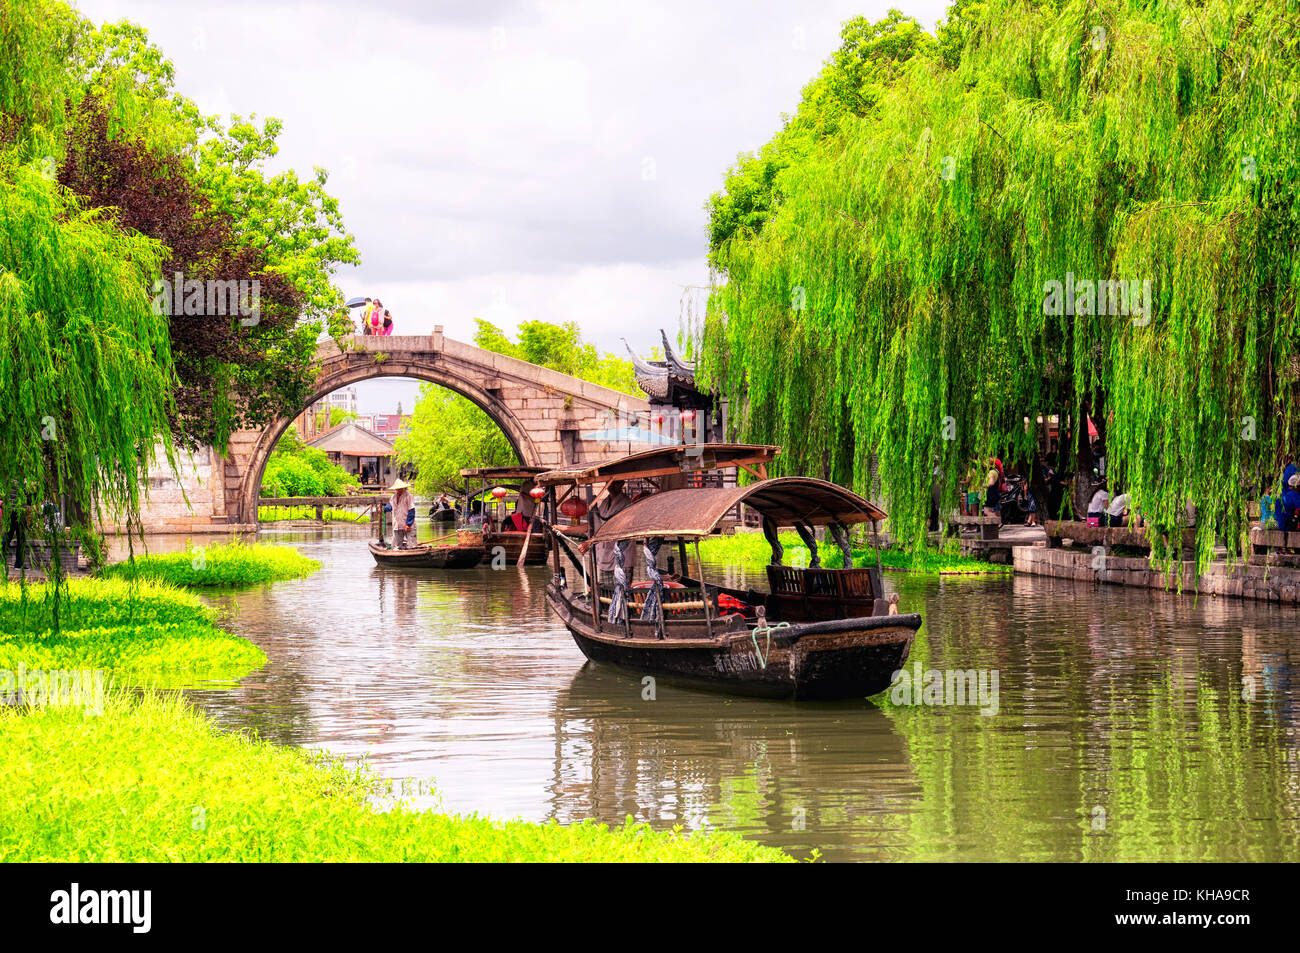 August 8, 2015. xitang Stadt, China. wolong Brücke und touristische Boote auf dem Wasser Kanäle von xitang Altstadt in Yokkaichi County in Lijiang entfernt c Stockfoto